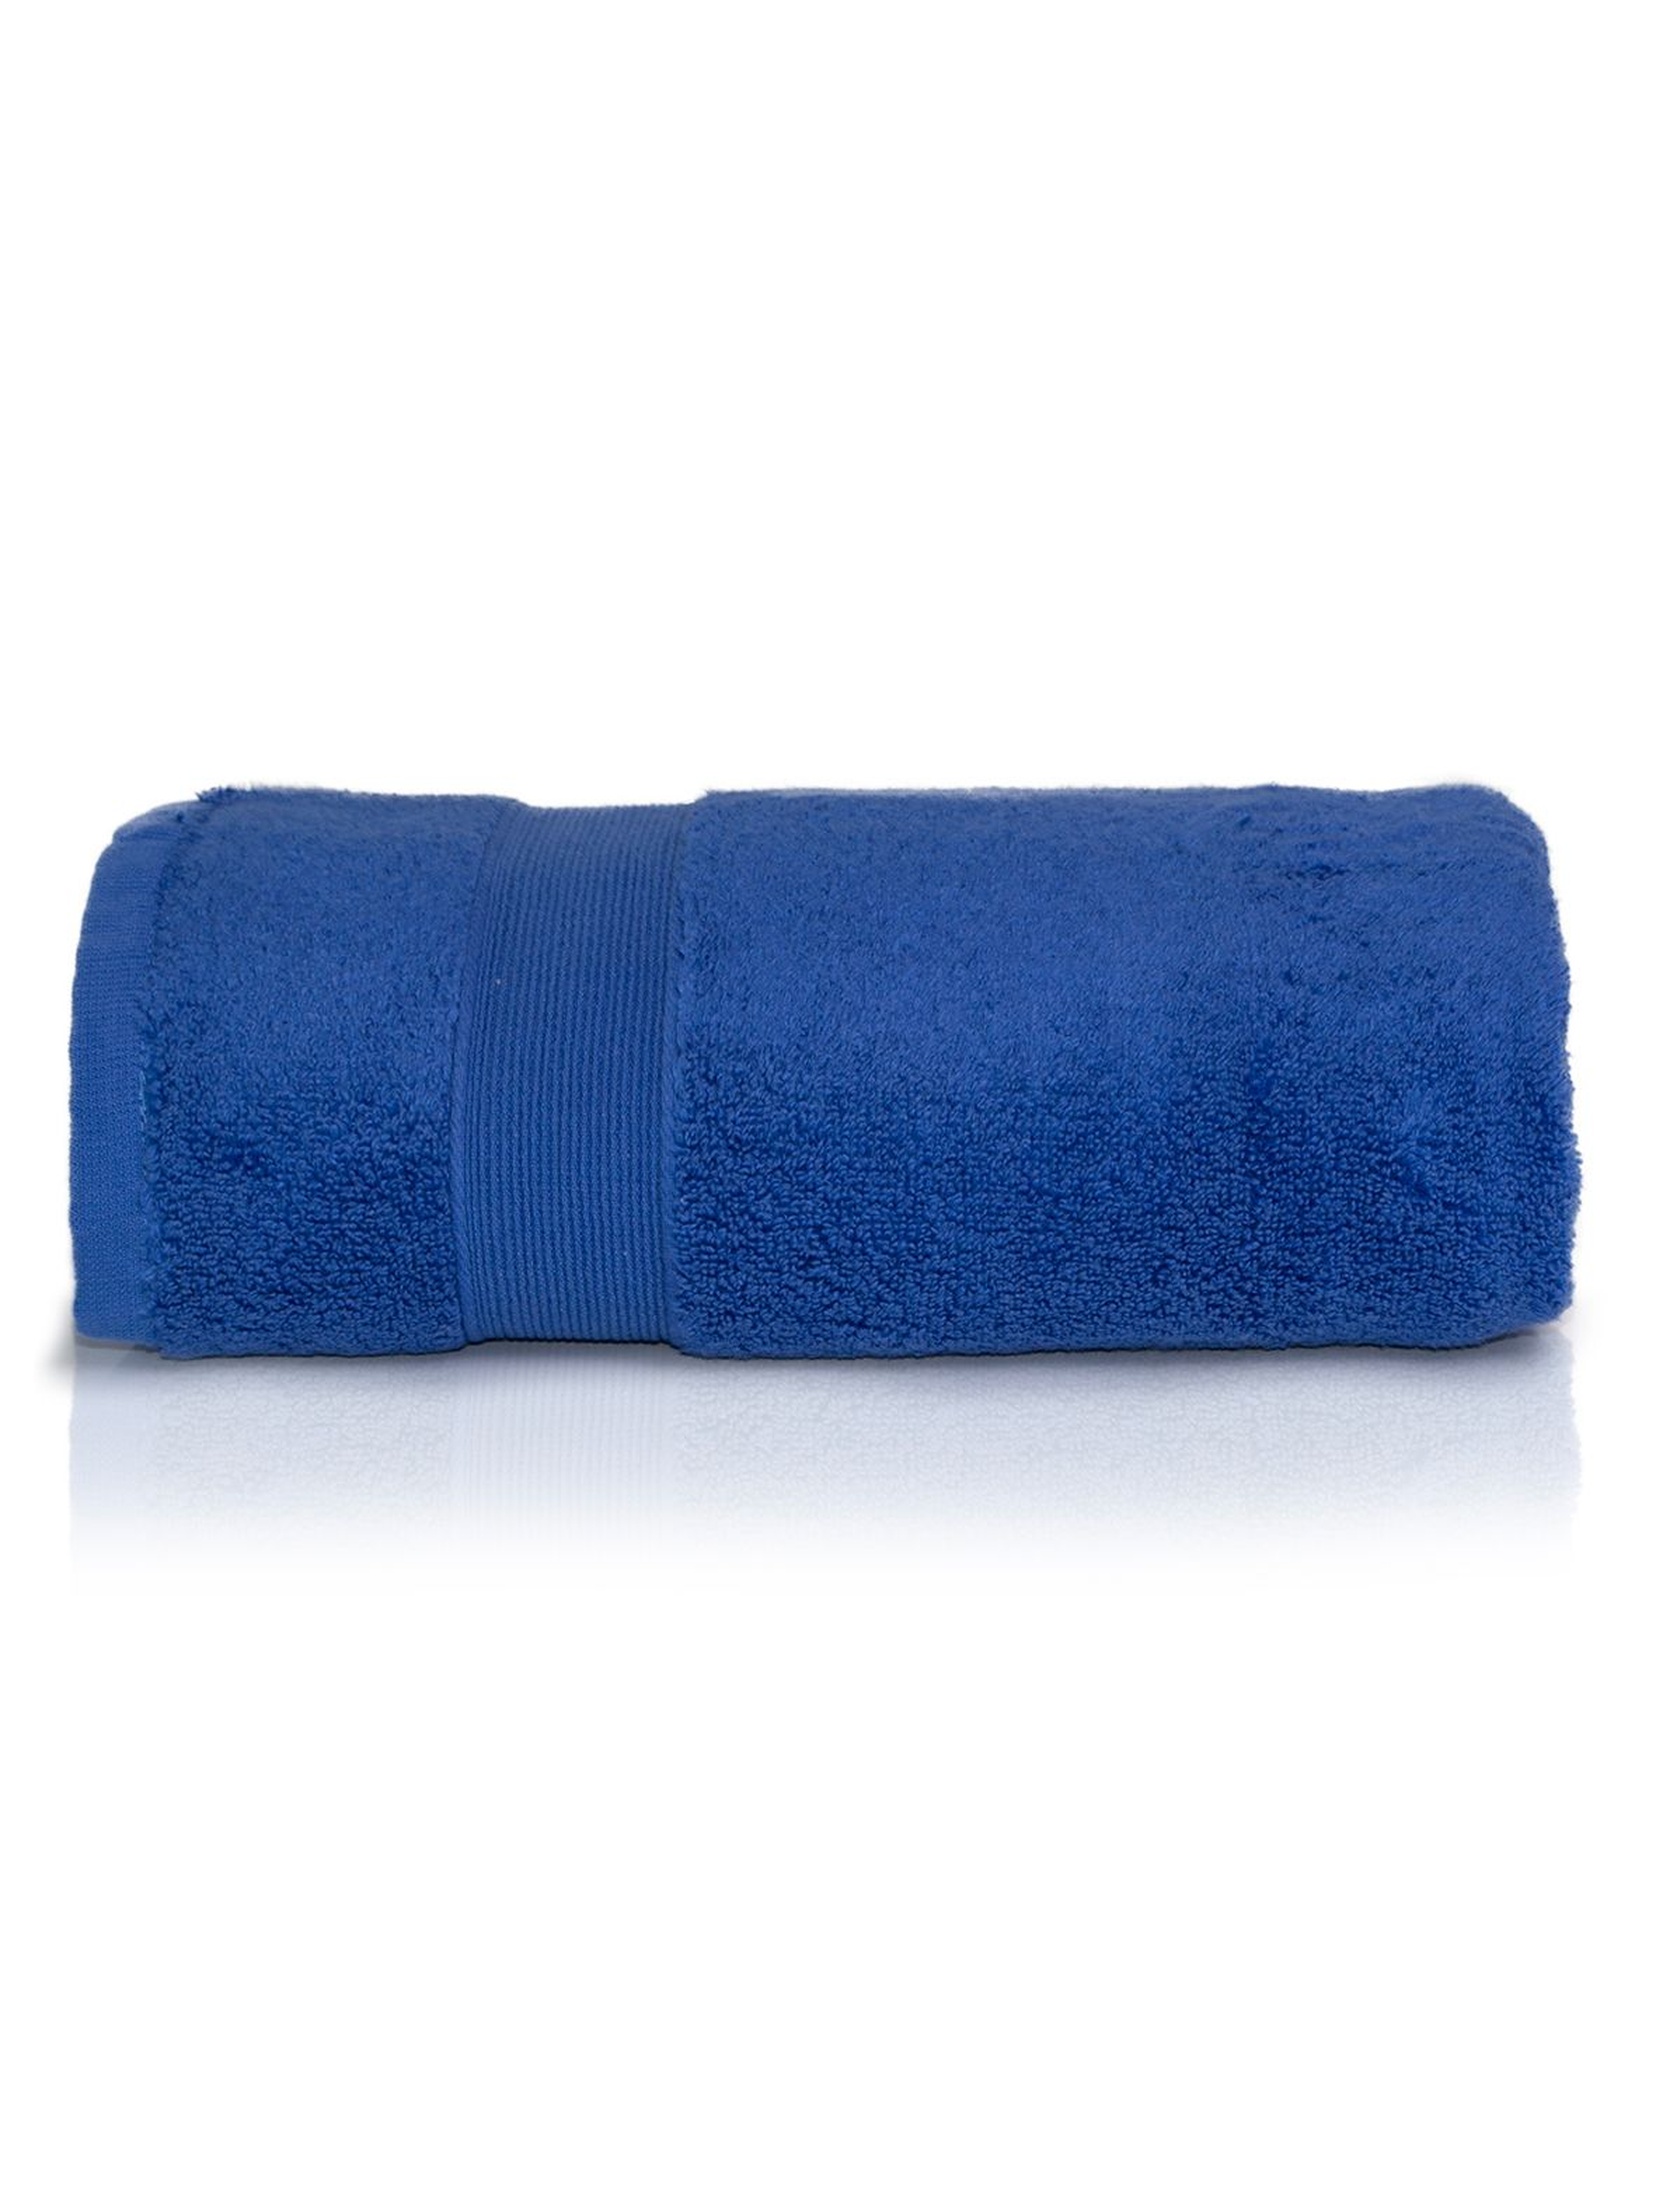 Bawełniany ręcznik ROCCO 70x140 cm - niebieski